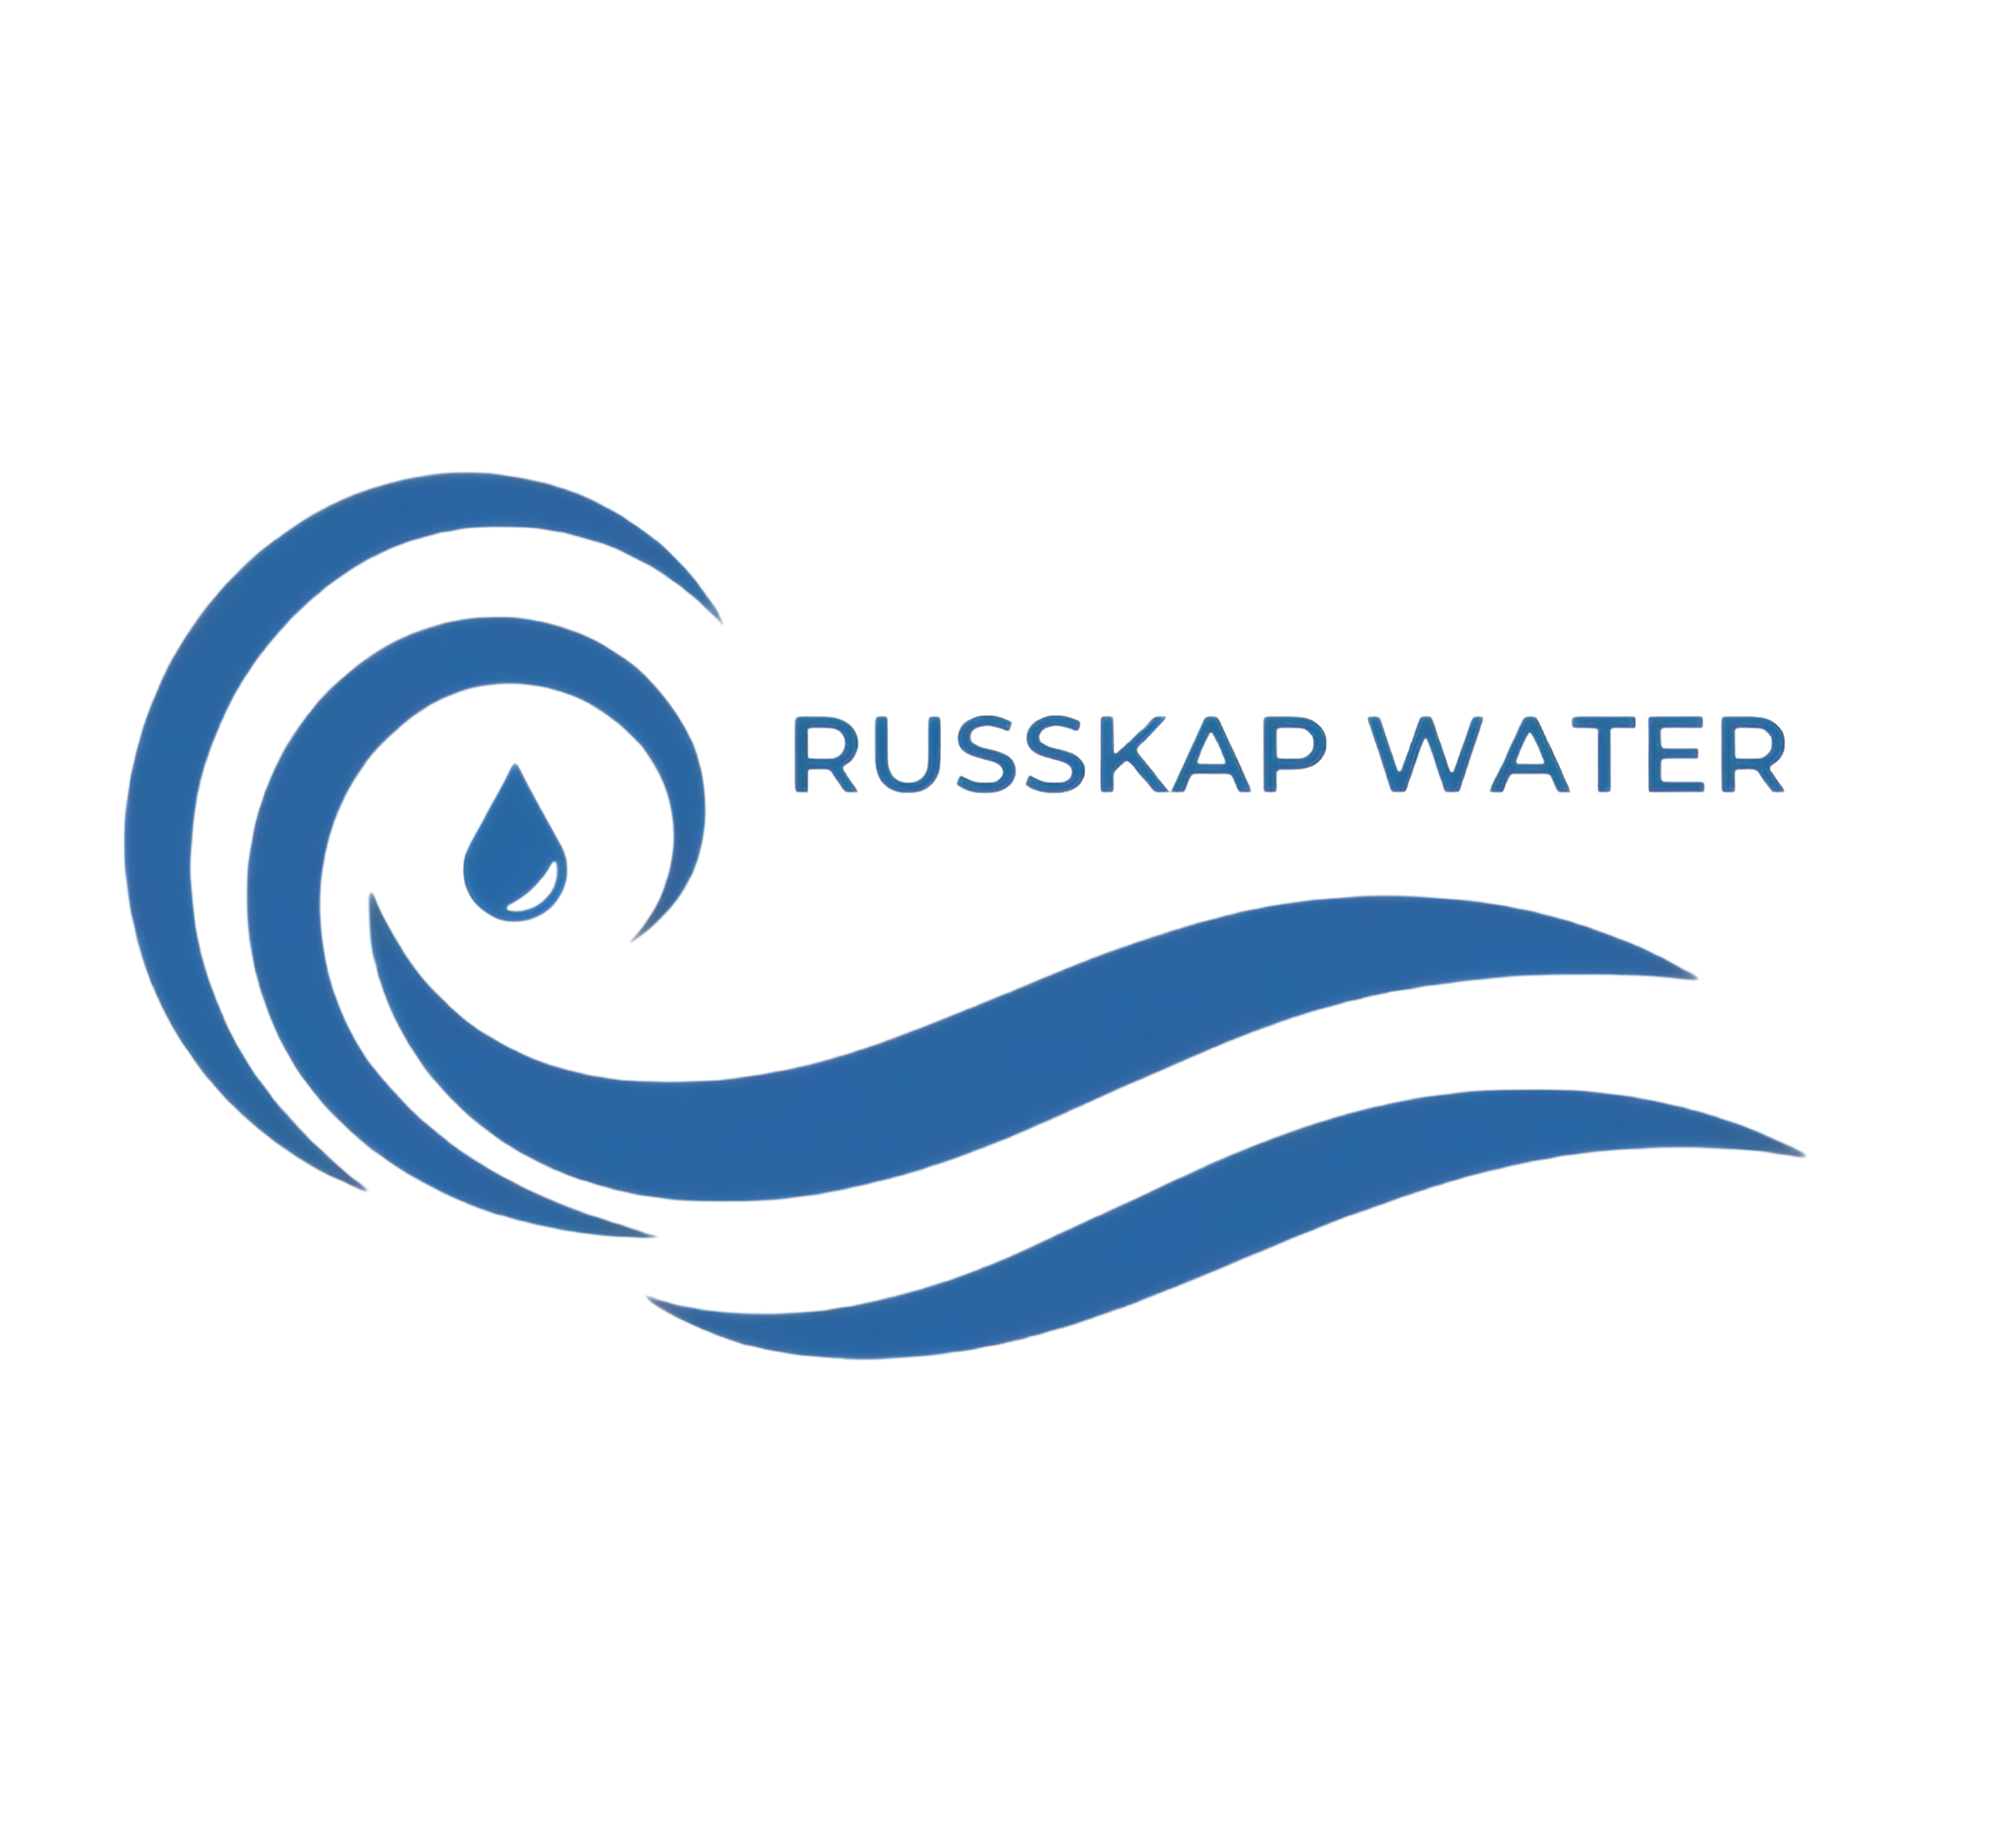 RussKap Water